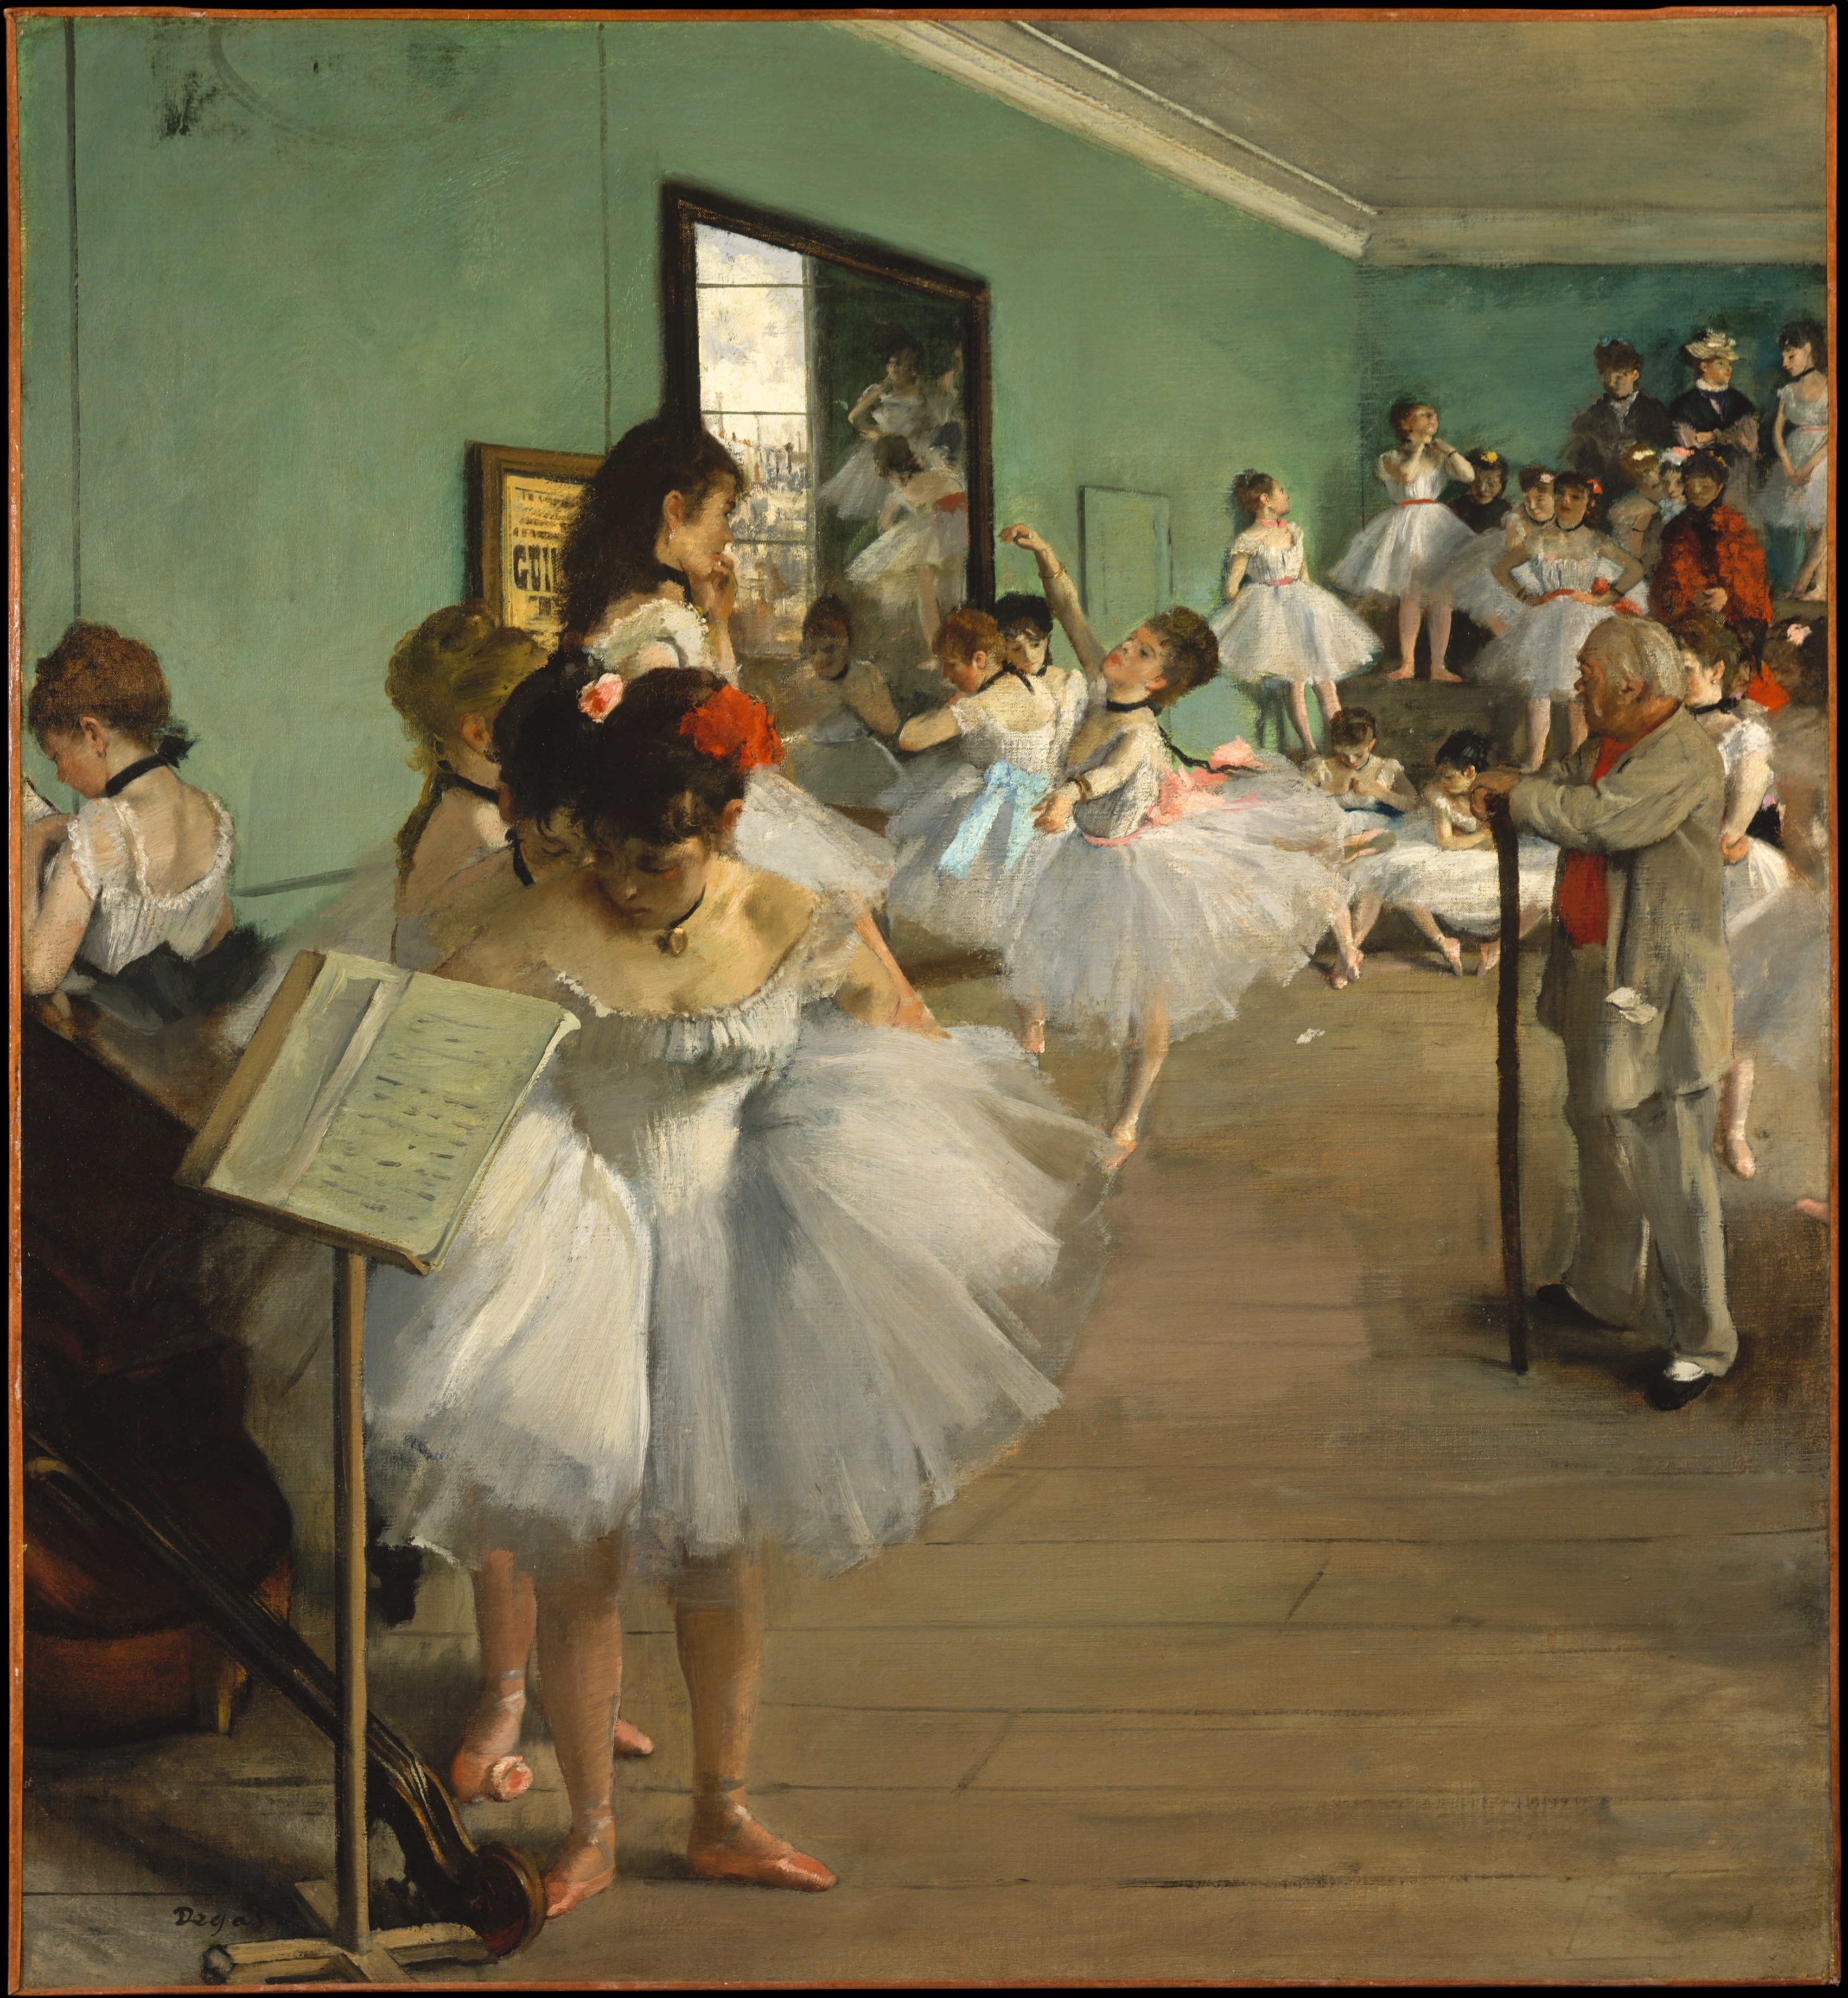 درس الرقص by Edgar Degas - 1874 - 83.5 x 77.2 cm 